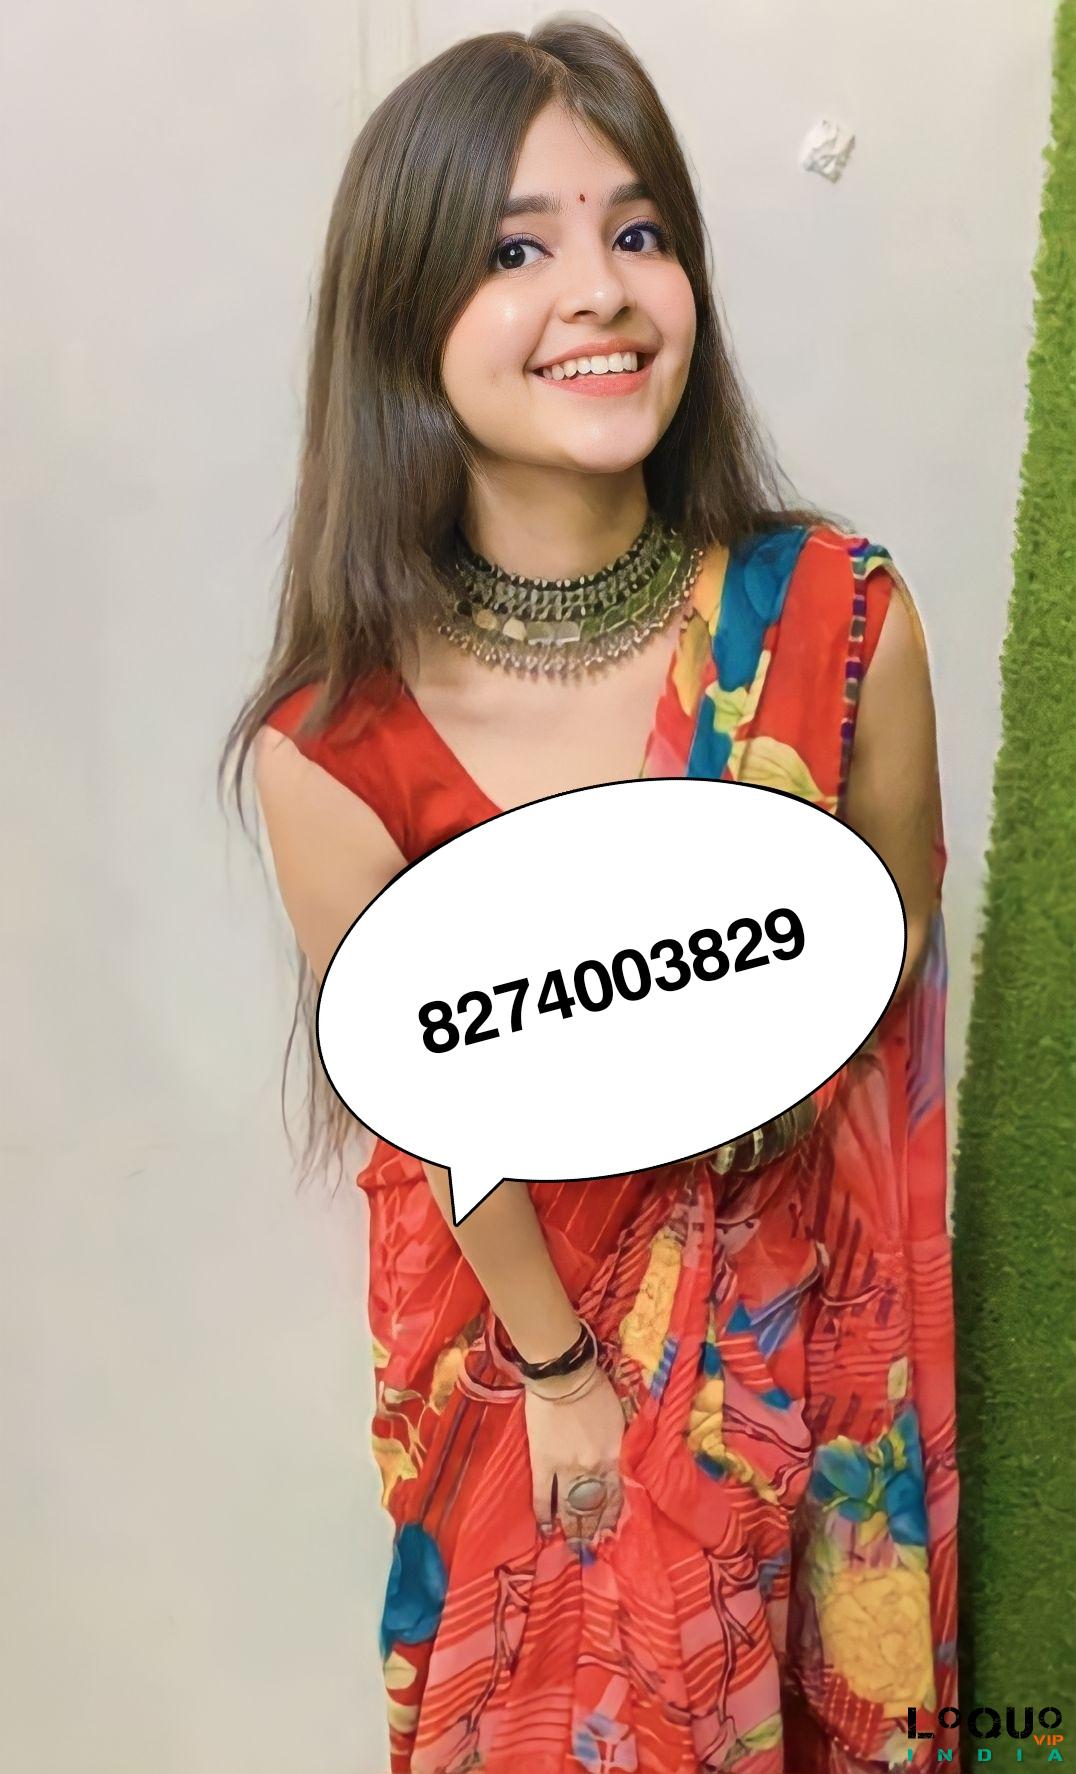 Call Girls Telangana: Mancheria❤CALL GIRL 8274003829 ❤CALL GIRLS IN ESCORT SERVICE❤CALL GIRL